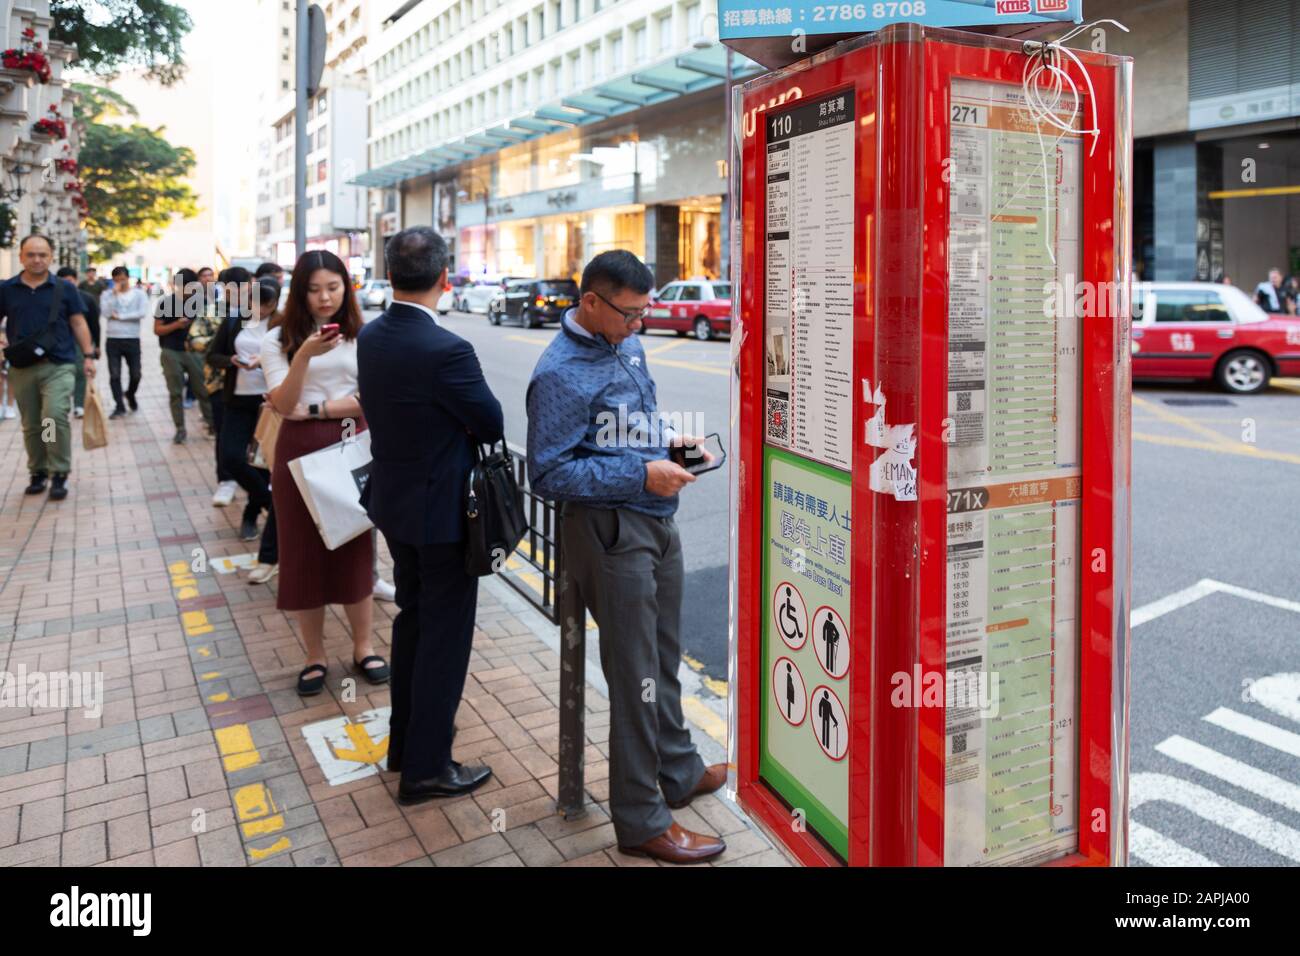 Hongkong Lifestyle - Menschen, die an einer Bushaltestelle auf einen Bus an einer Bushaltestelle in Hongkong Asia warten Stockfoto